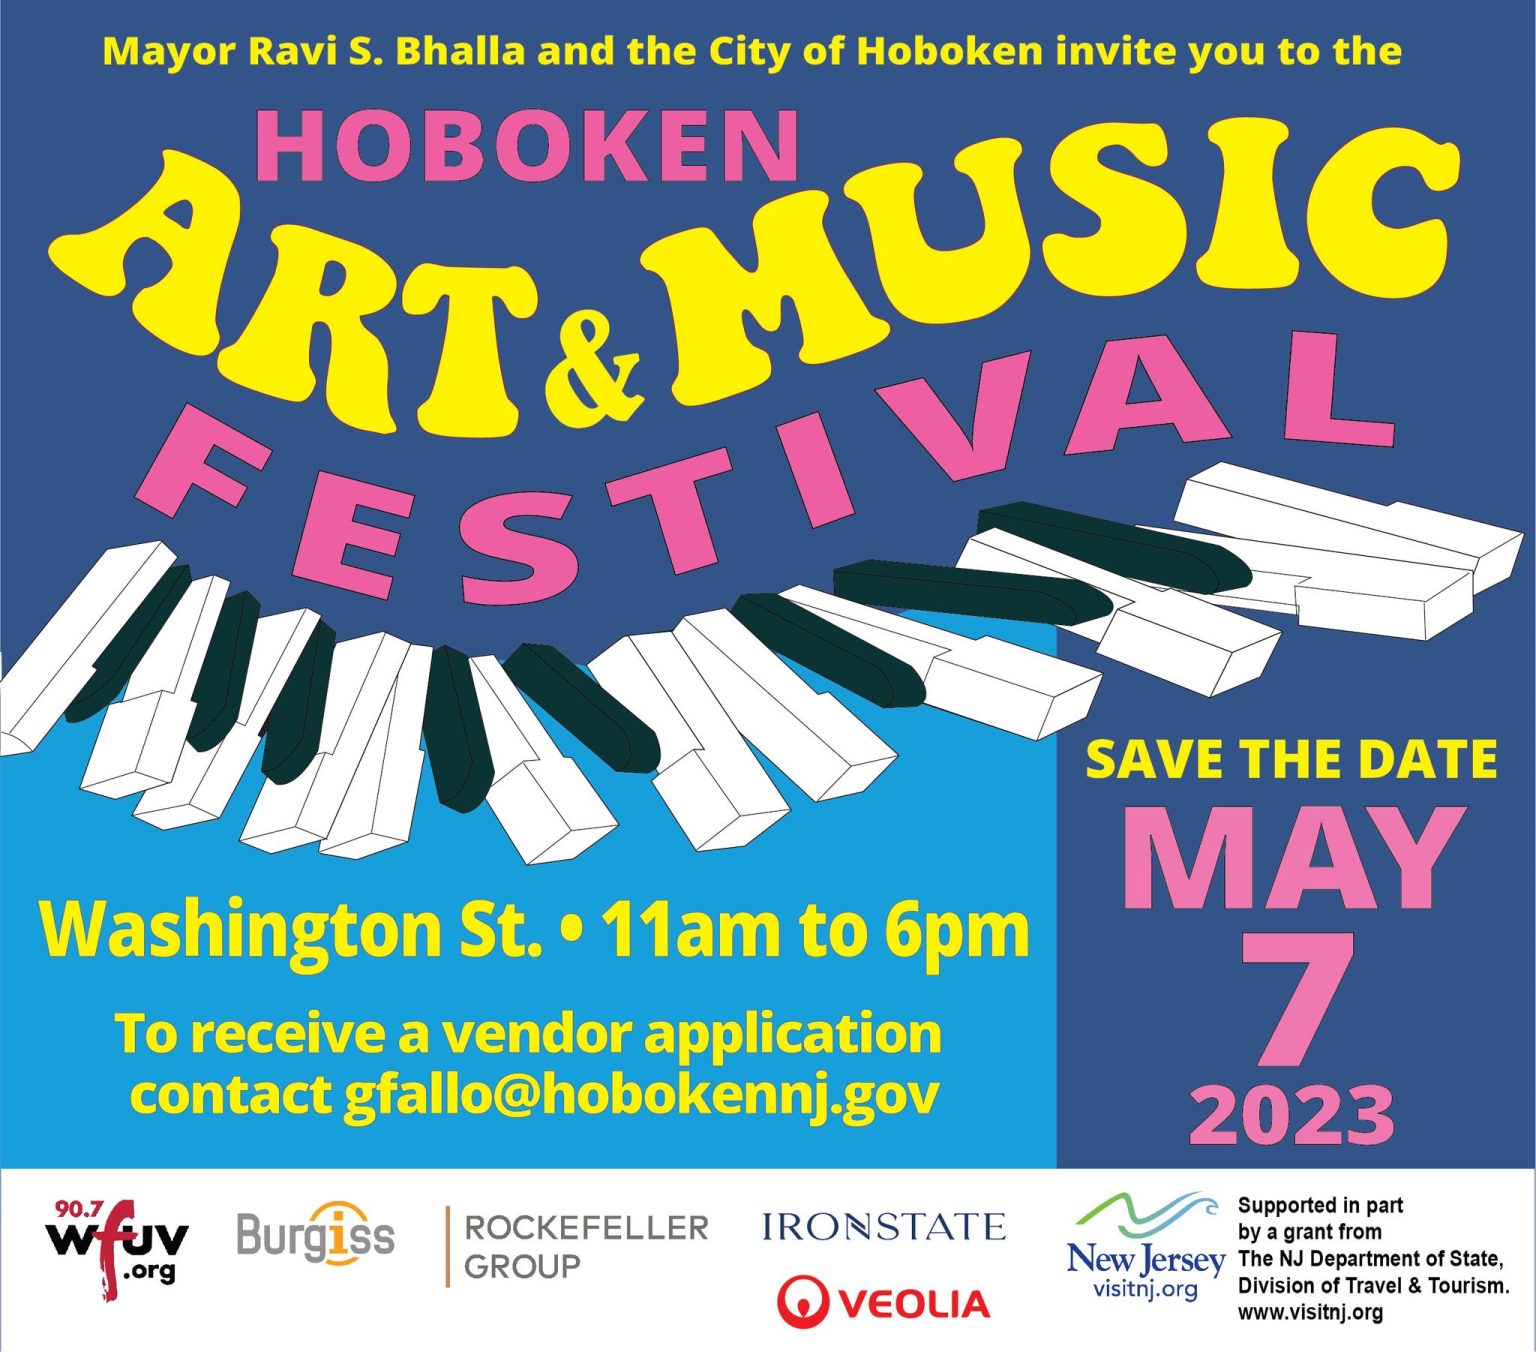 Hoboken Arts & Music Festival Hudson County